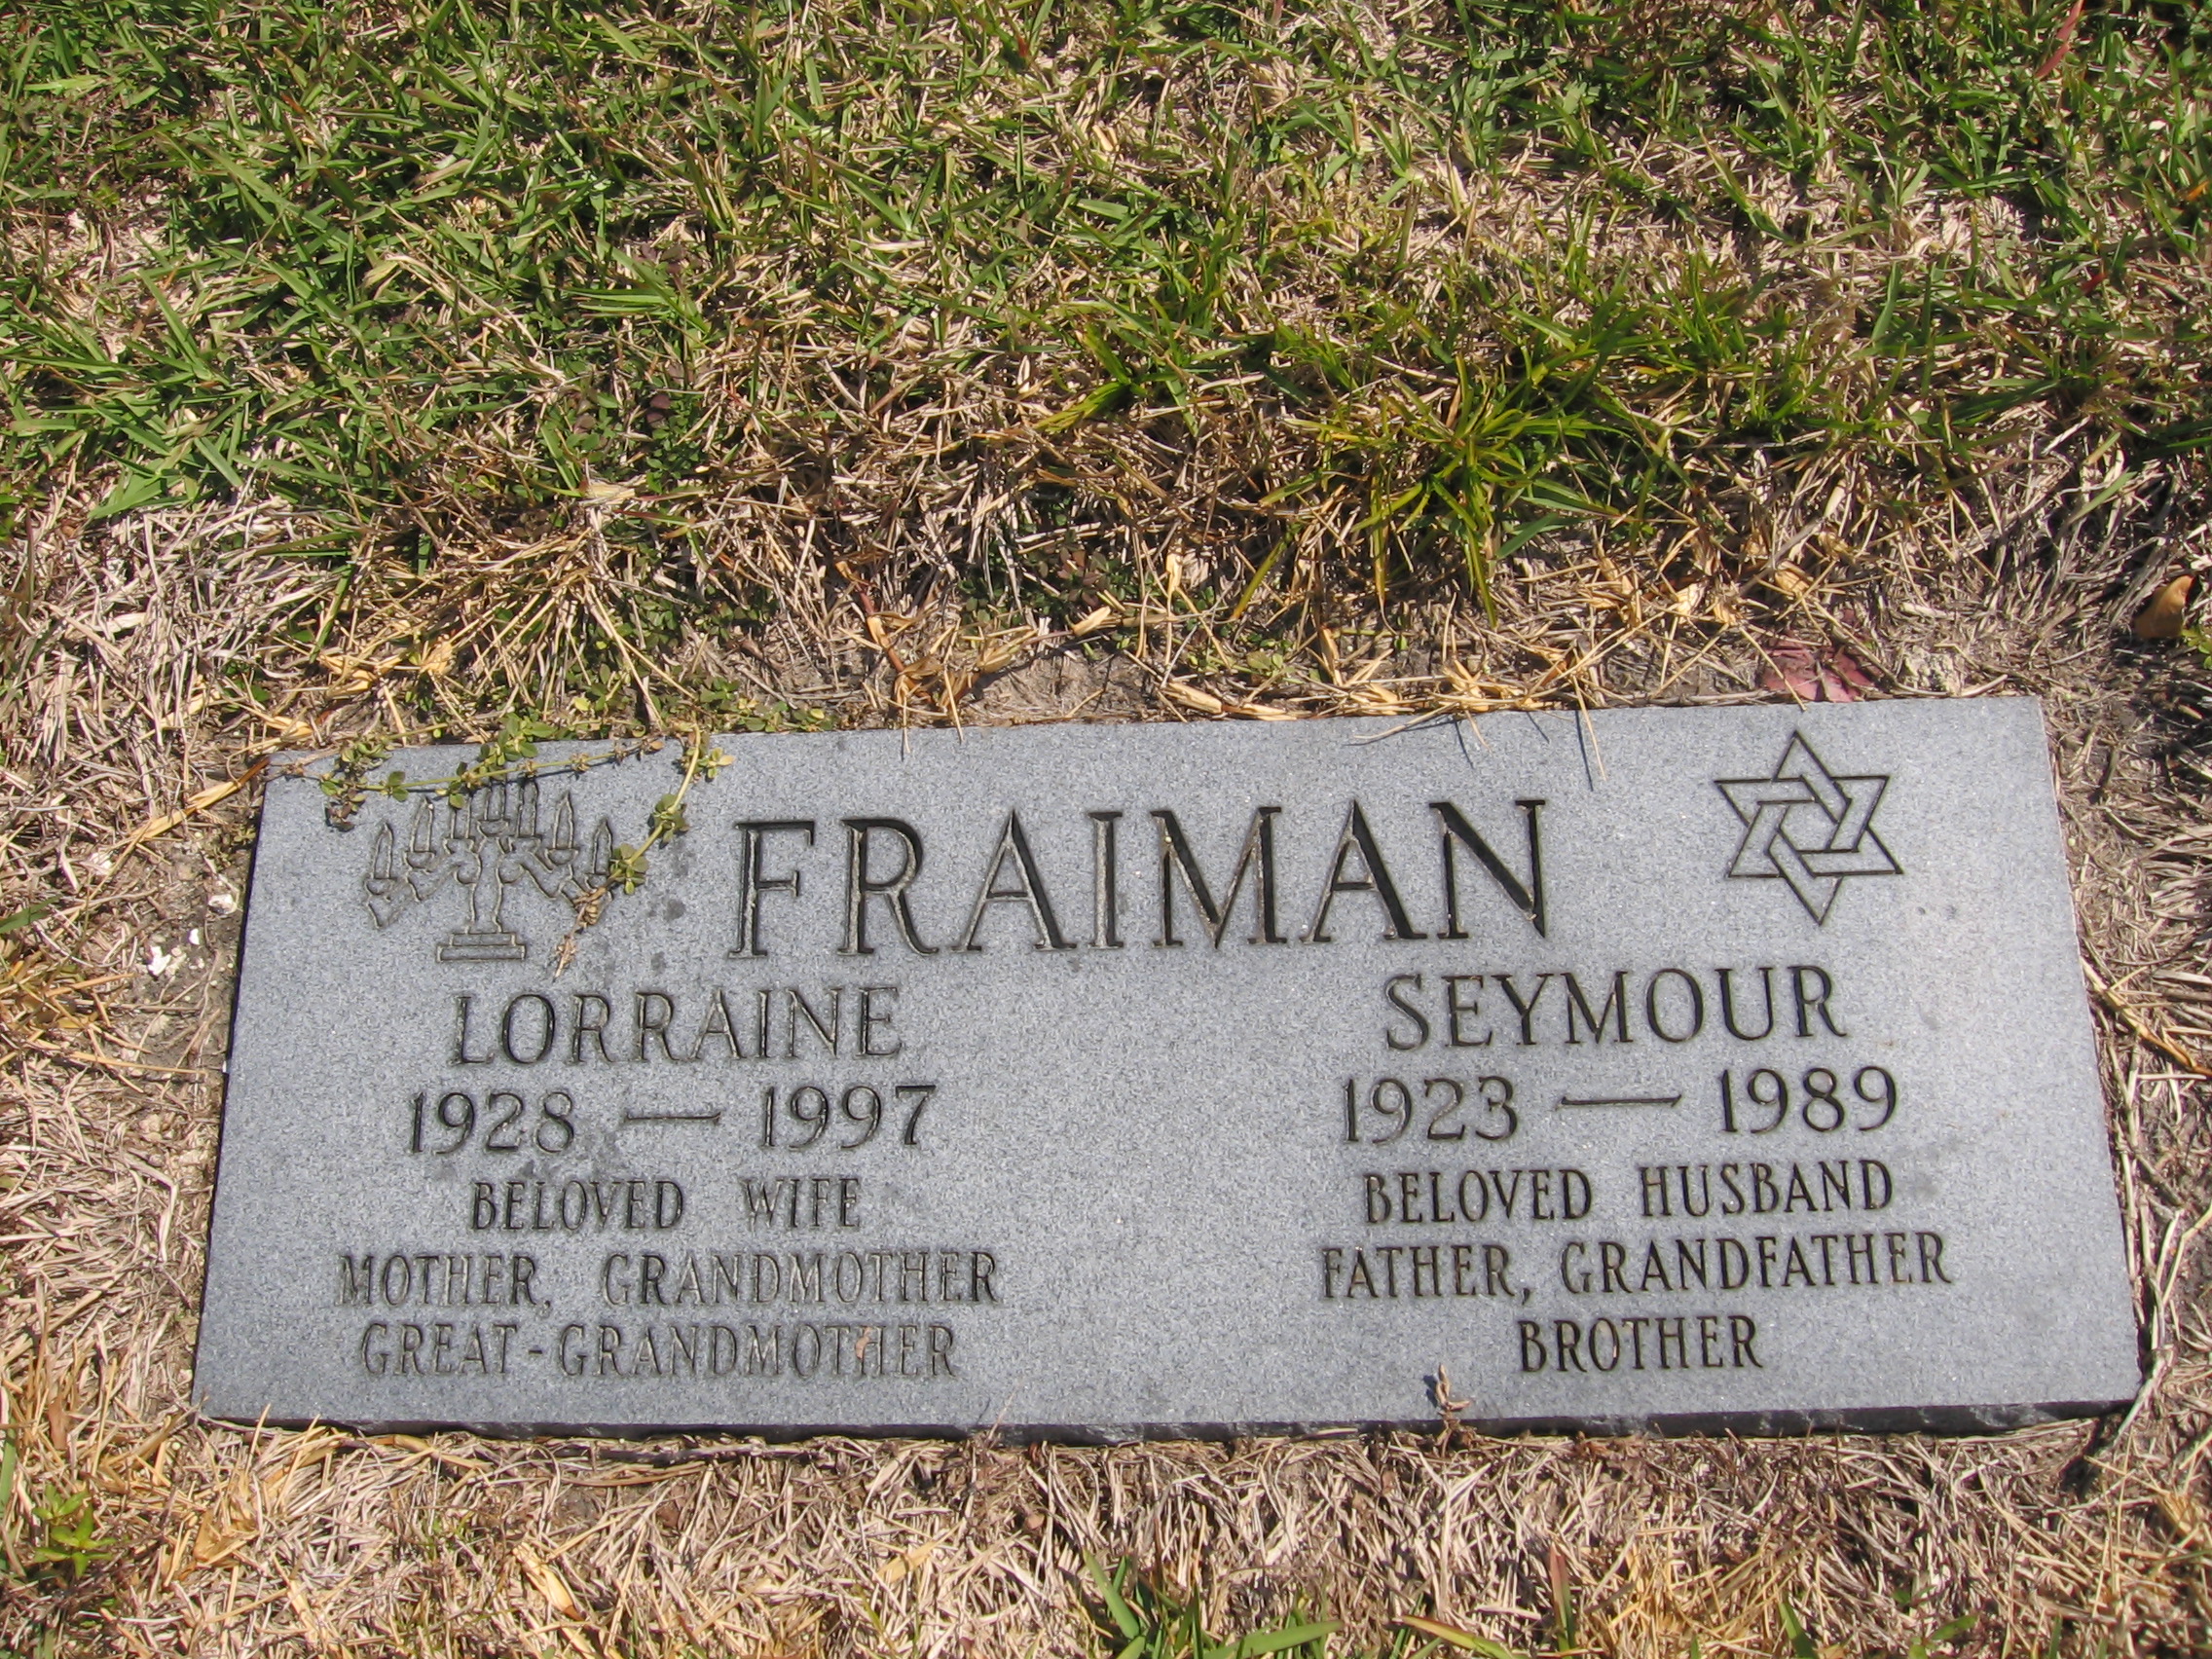 Lorraine Fraiman